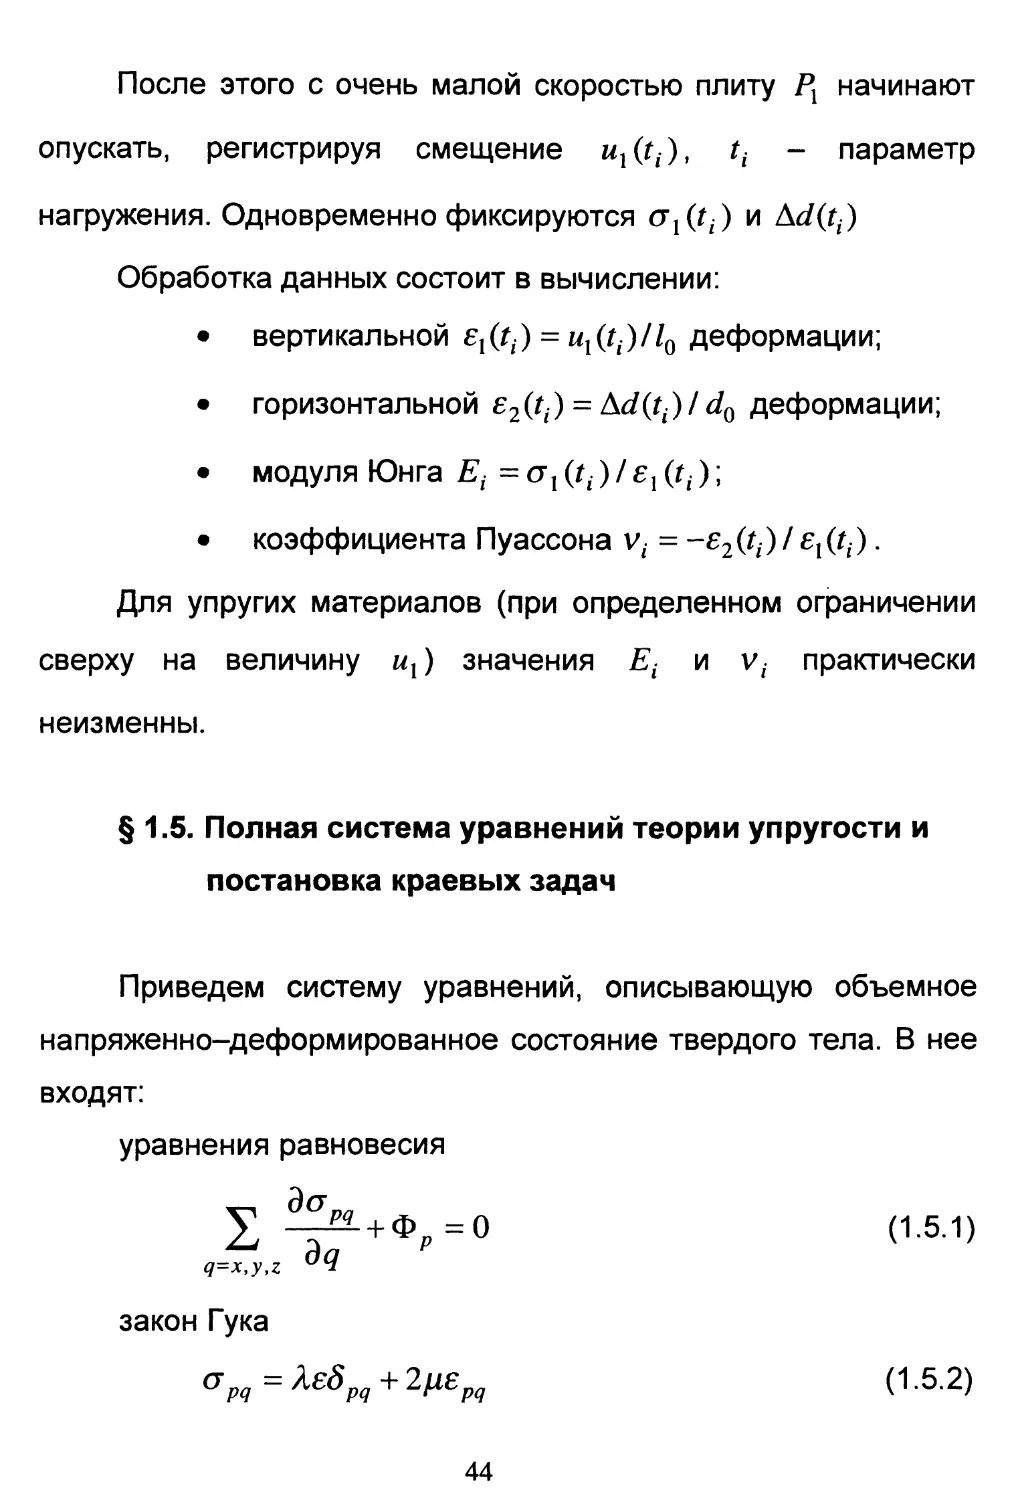 § 1.5. Полная система уравнений теории упругости и постановка краевых задач